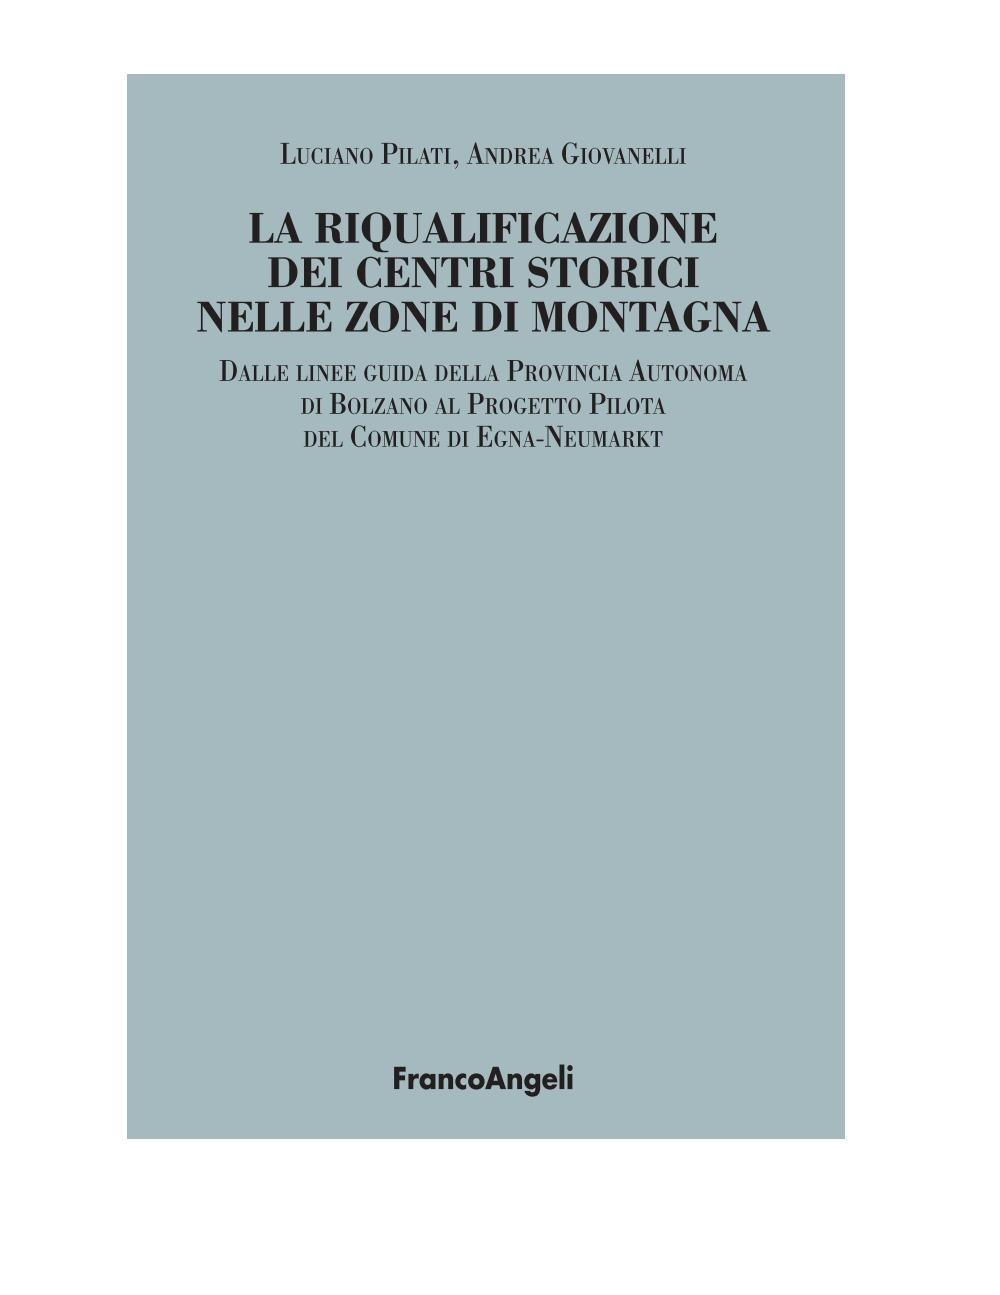 La riqualificazione dei centri storici nelle zone di montagna. Dalle linee guida della Provincia Autonoma di Bolzano al Progetto Pilota del Comune di Egna-Neumarkt - Librerie.coop